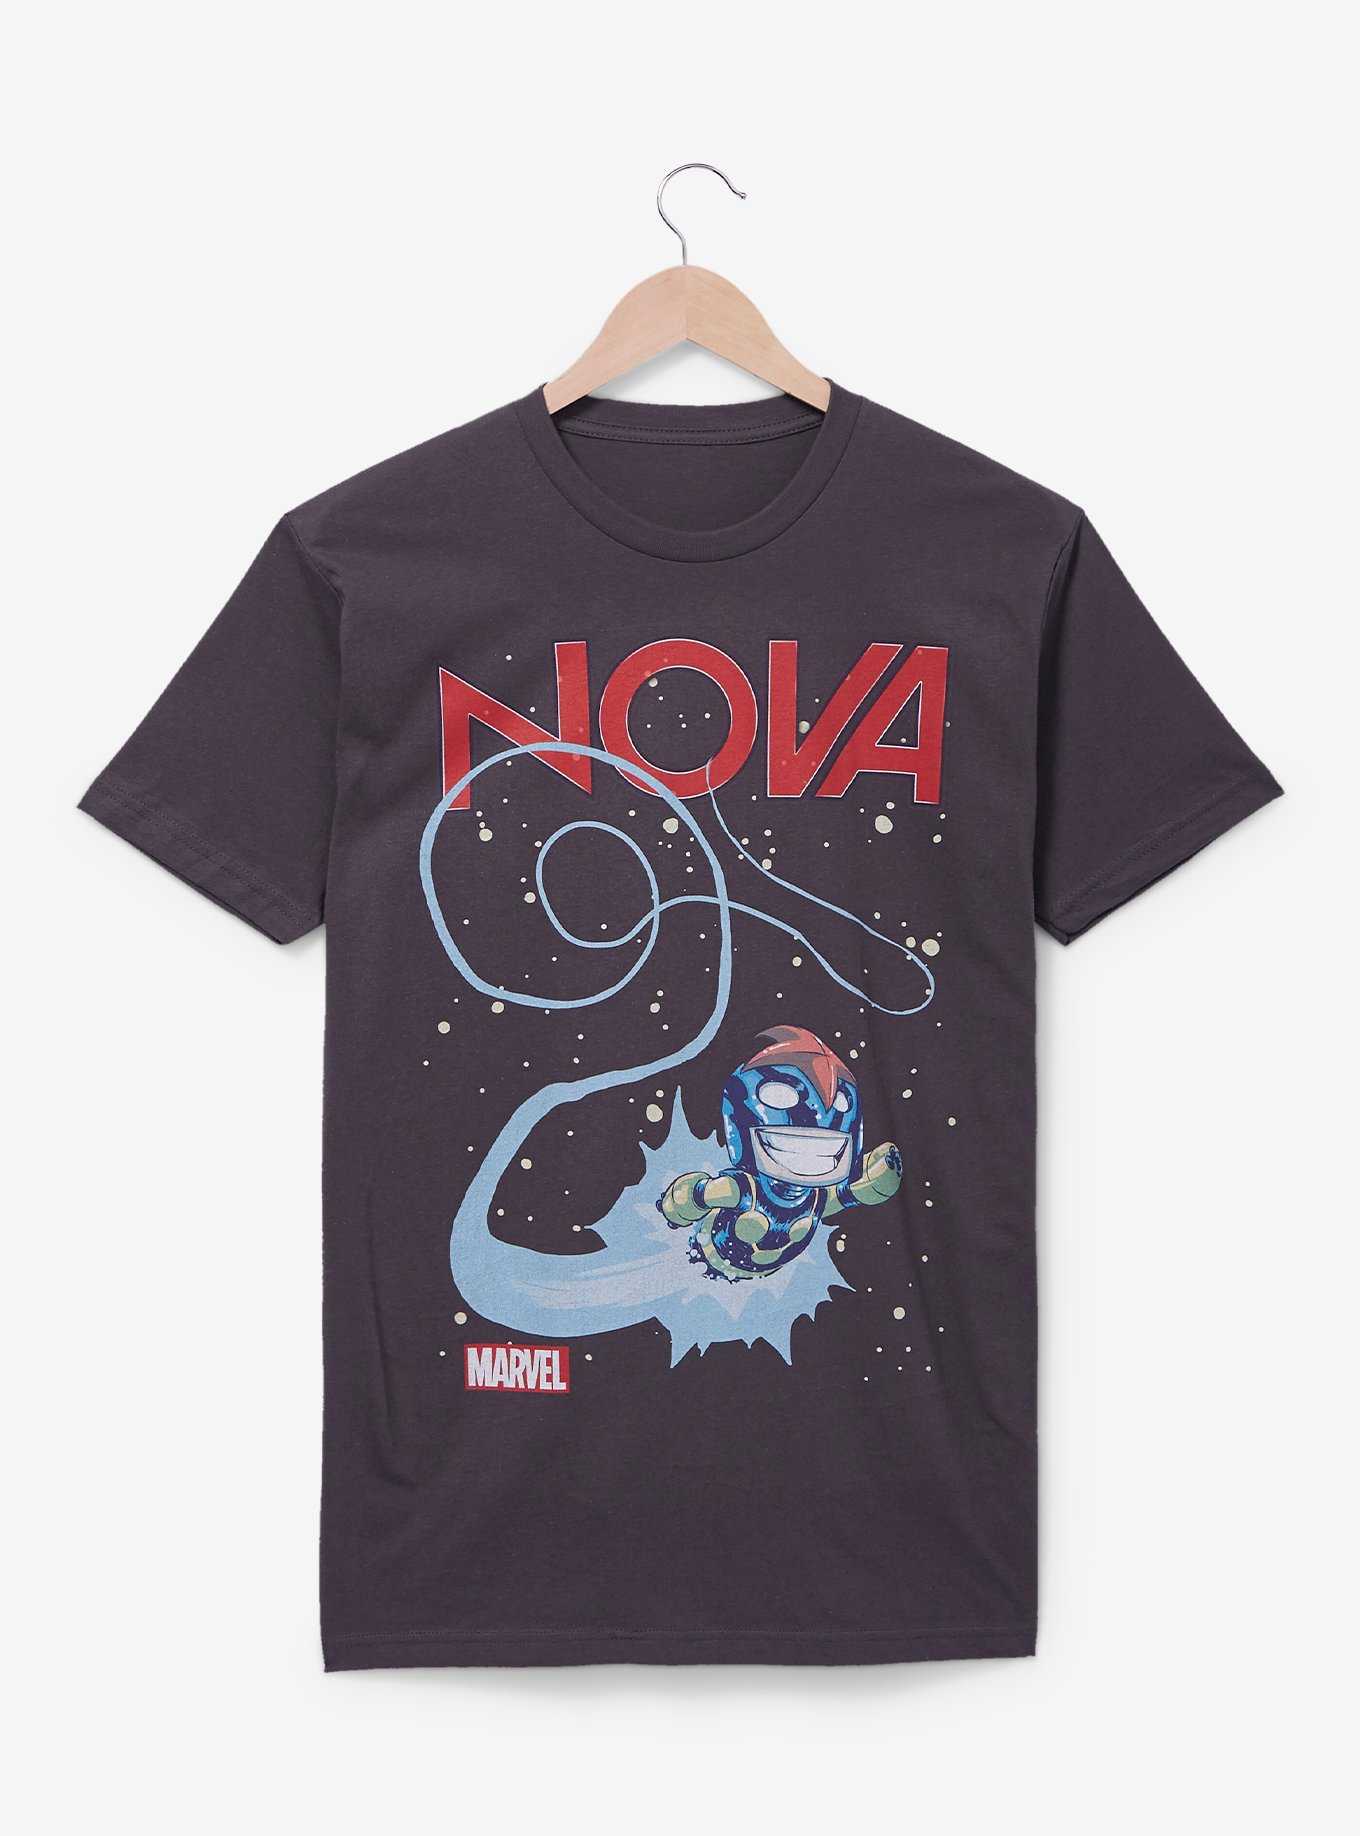 Marvel Nova Comic Book Cover T-Shirt - BoxLunch Exclusive, , hi-res